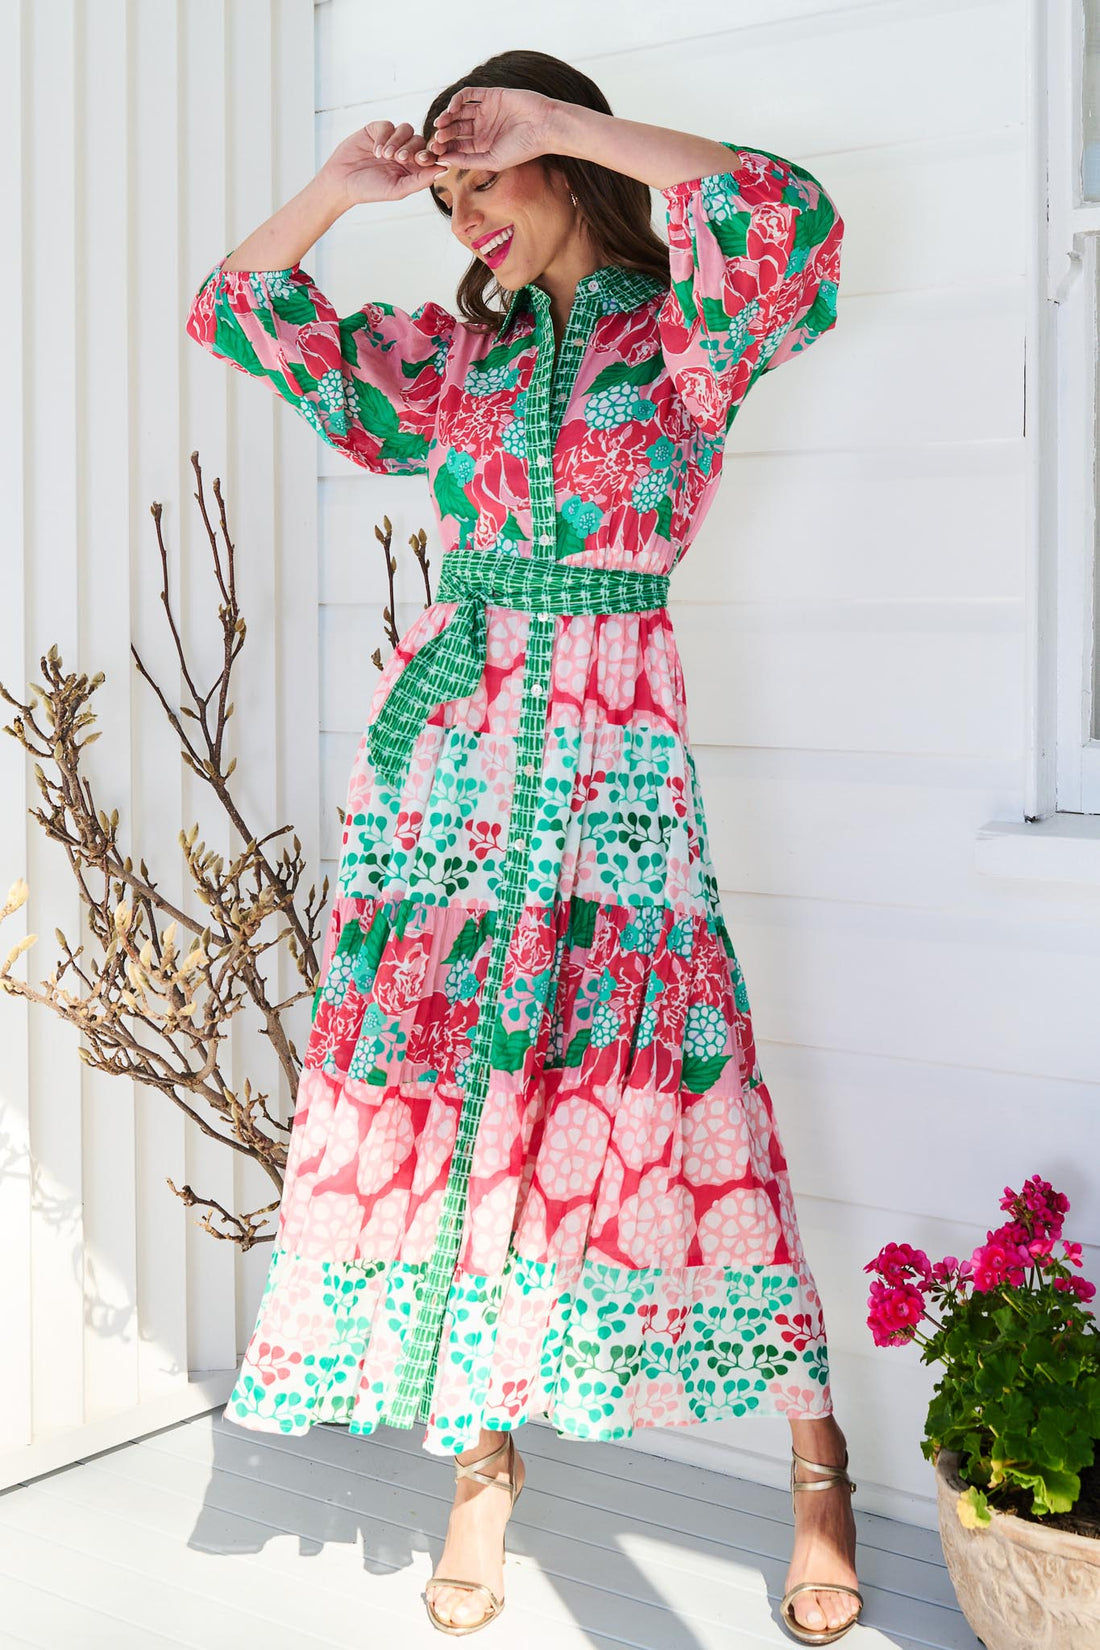 St Tropez Maxi Dress - Exclusive